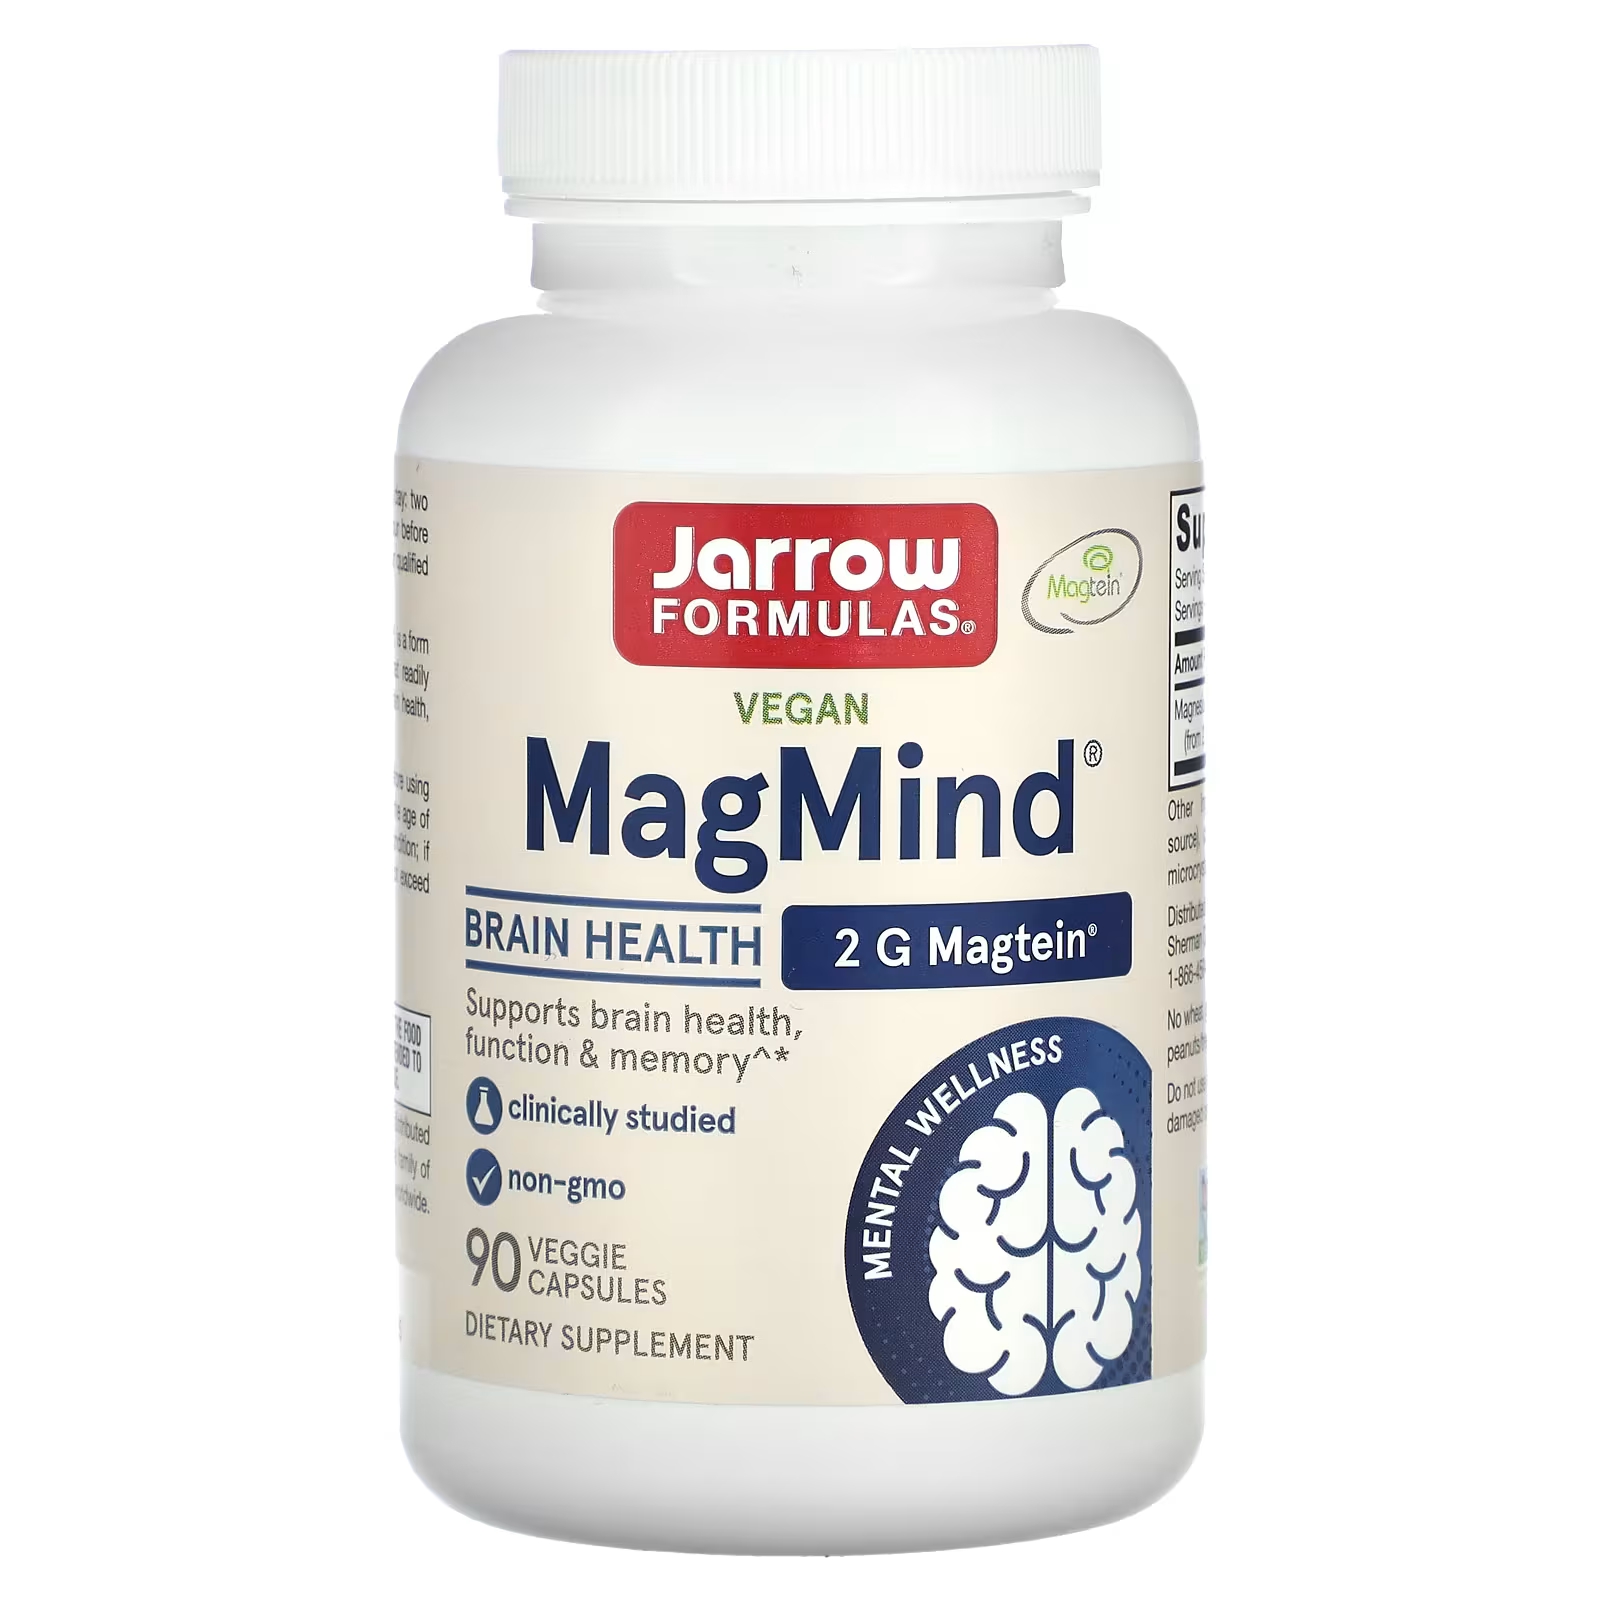 Jarrow Formulas Vegan MagMind Brain Health 90 растительных капсул магний magmind 90 вегетарианских капсул jarrow formulas